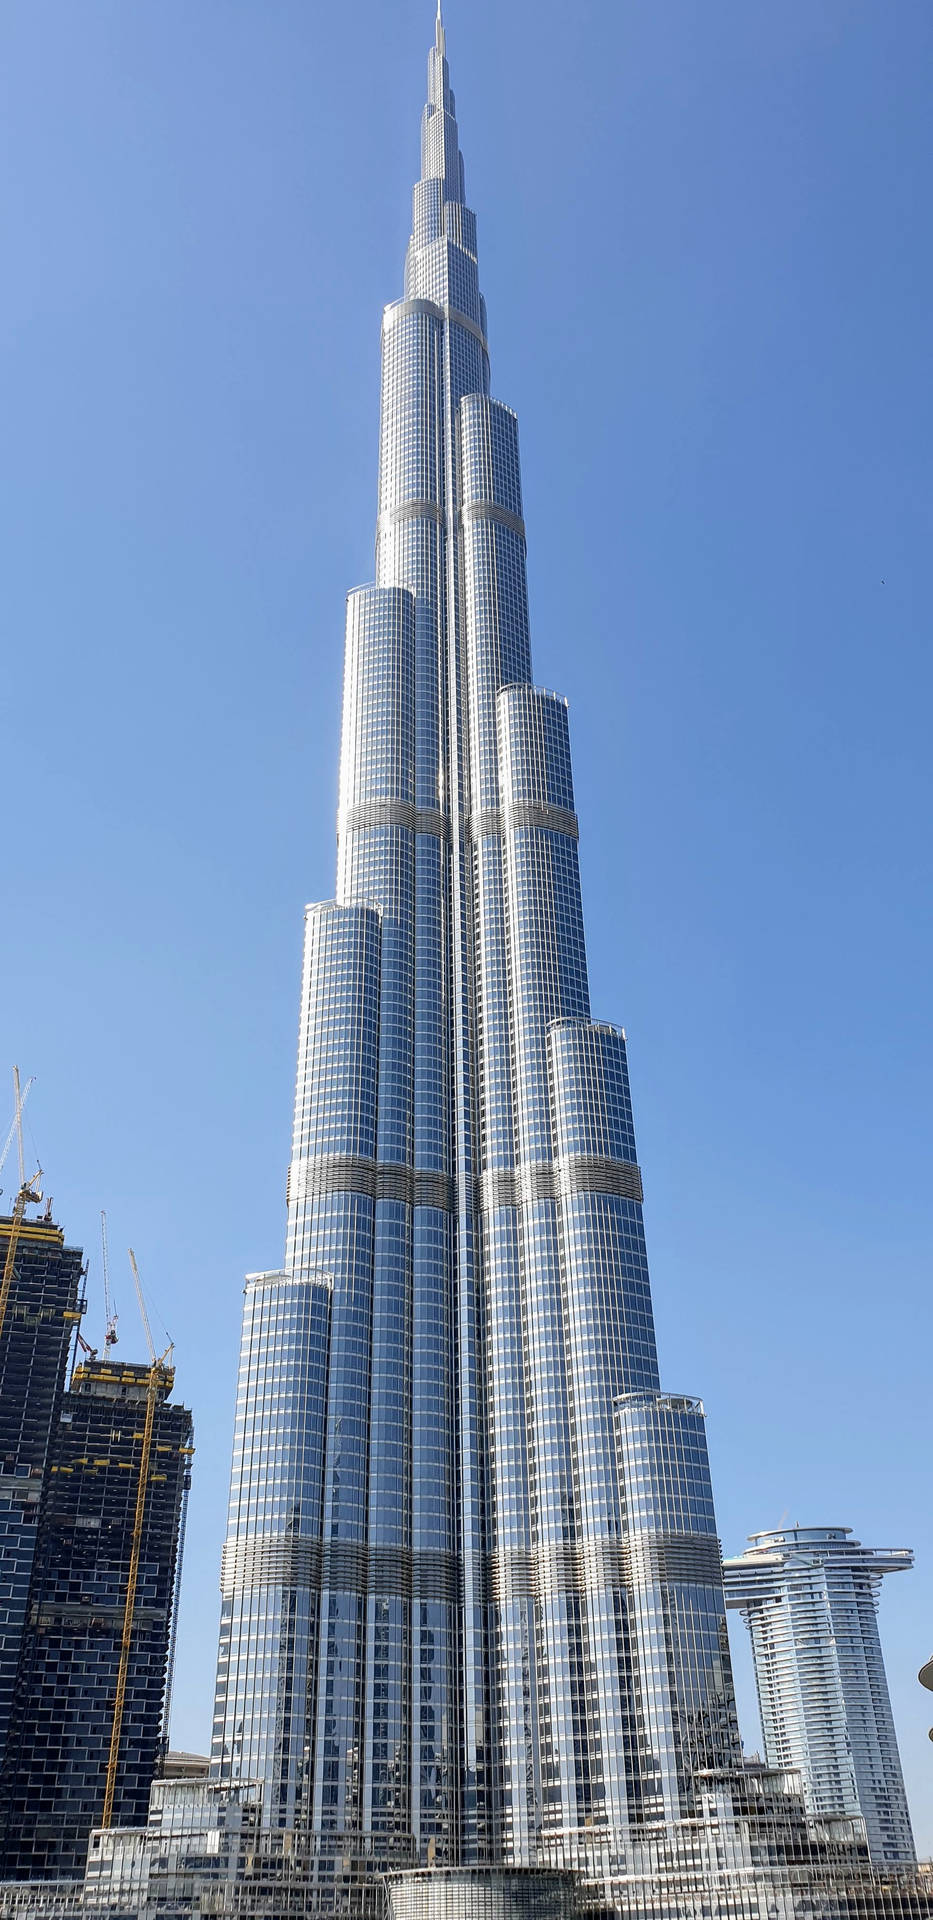 Skyscraper Burj Khalifa Full View